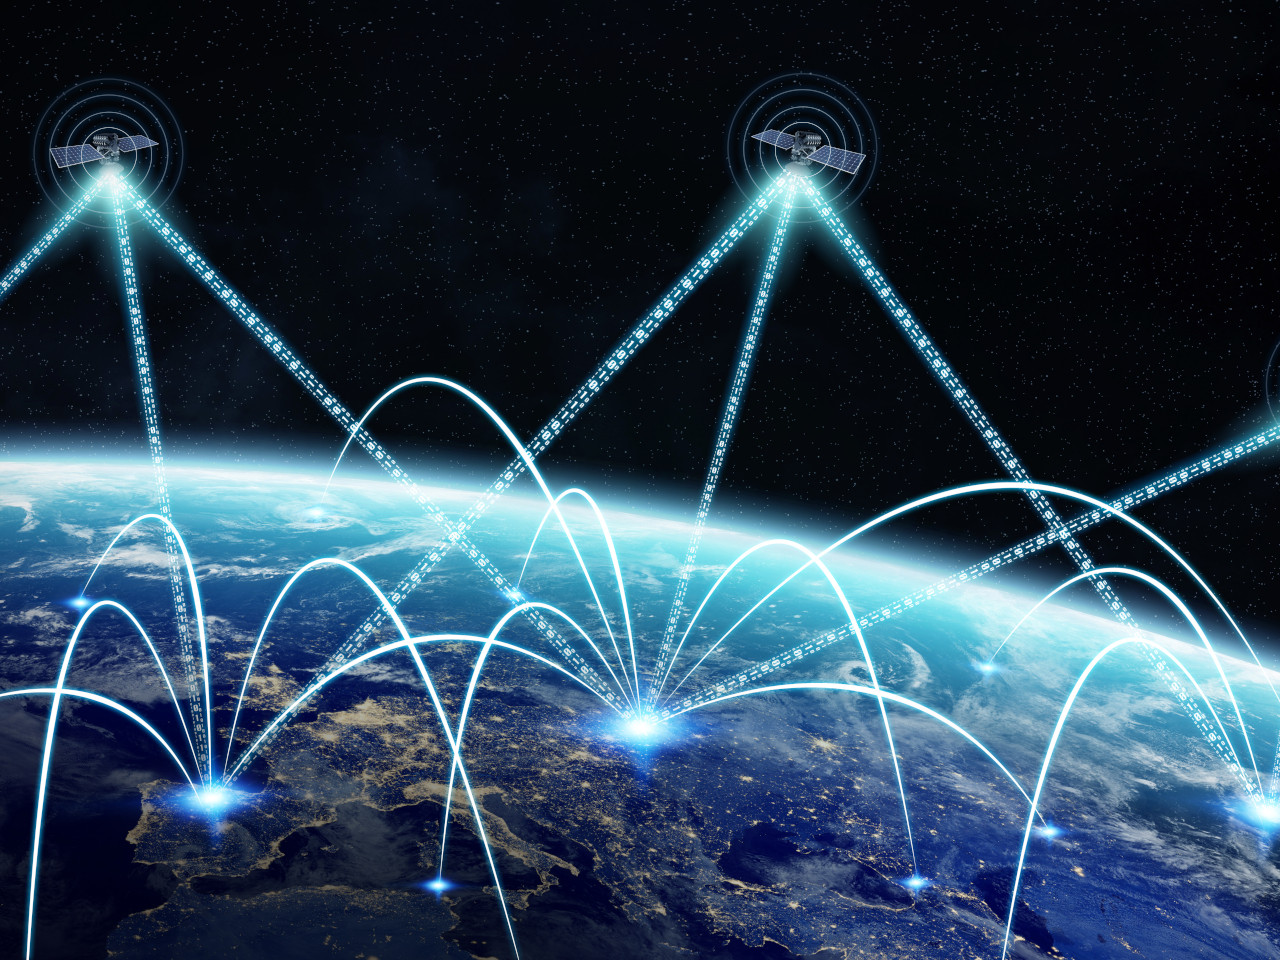 米連邦通信委員会、衛星からスマホへの直接通信の規制枠組みを最終決定へ